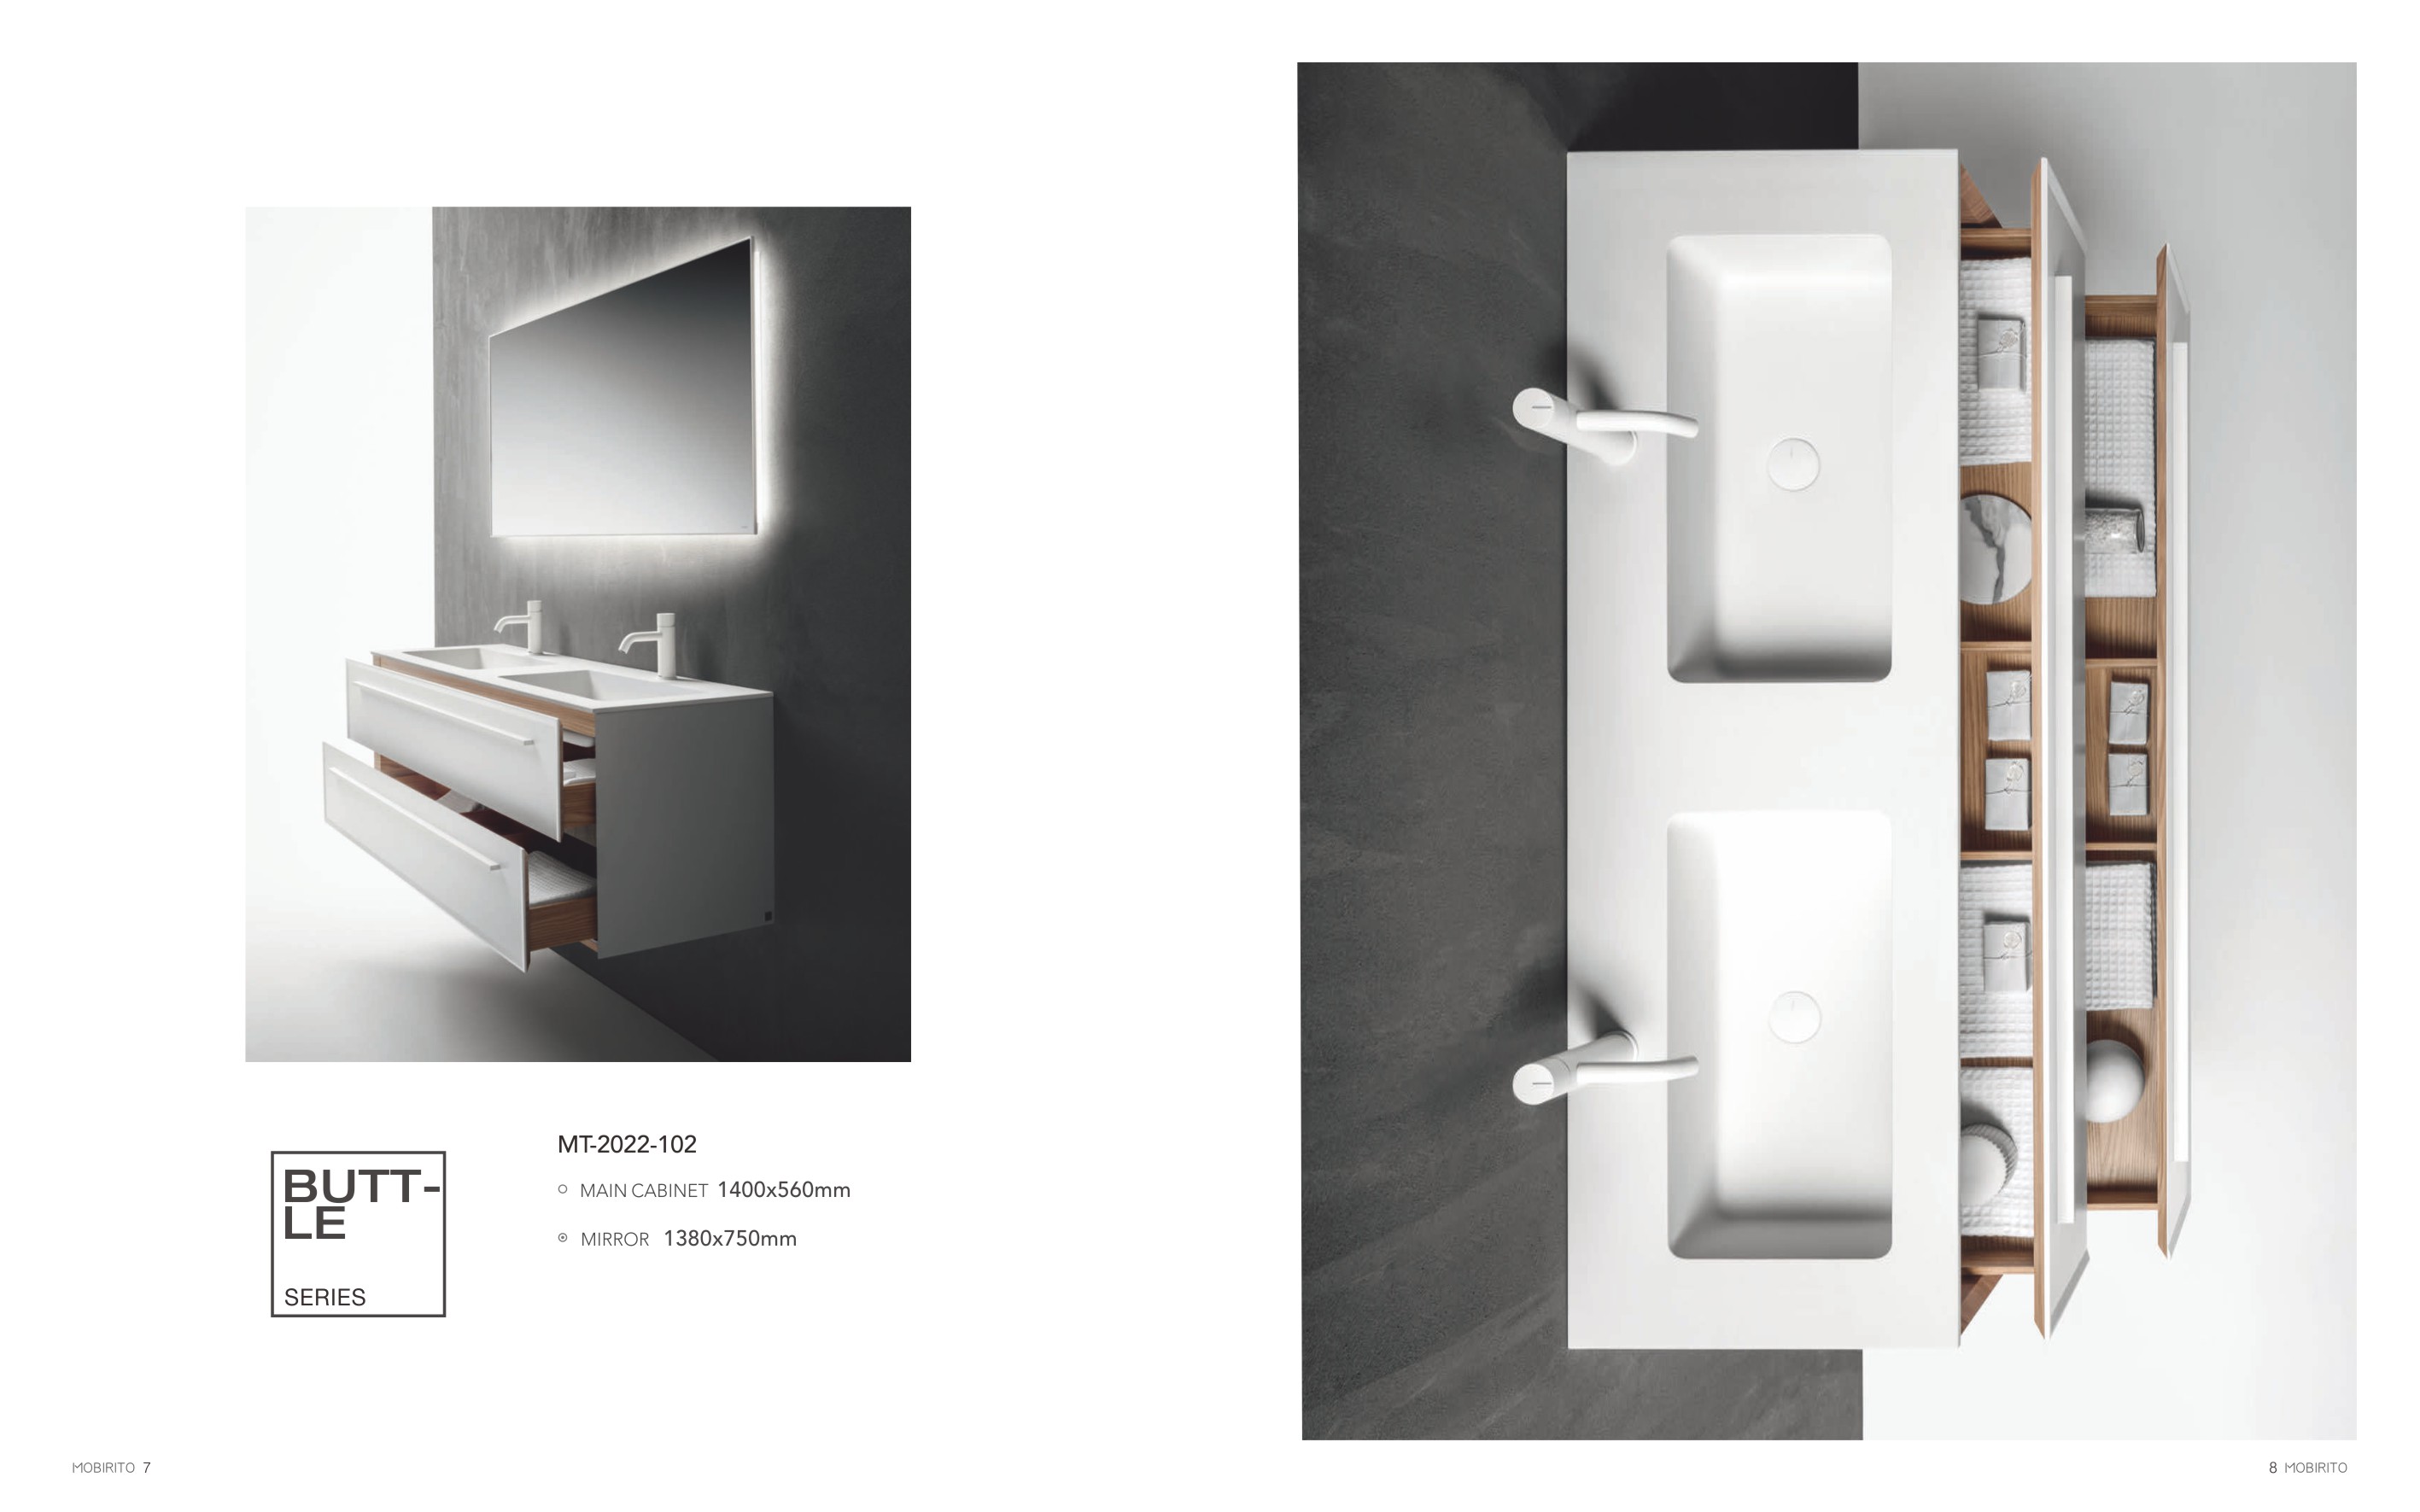 Wall-mounted Bathroom Cabinets MT2022-102